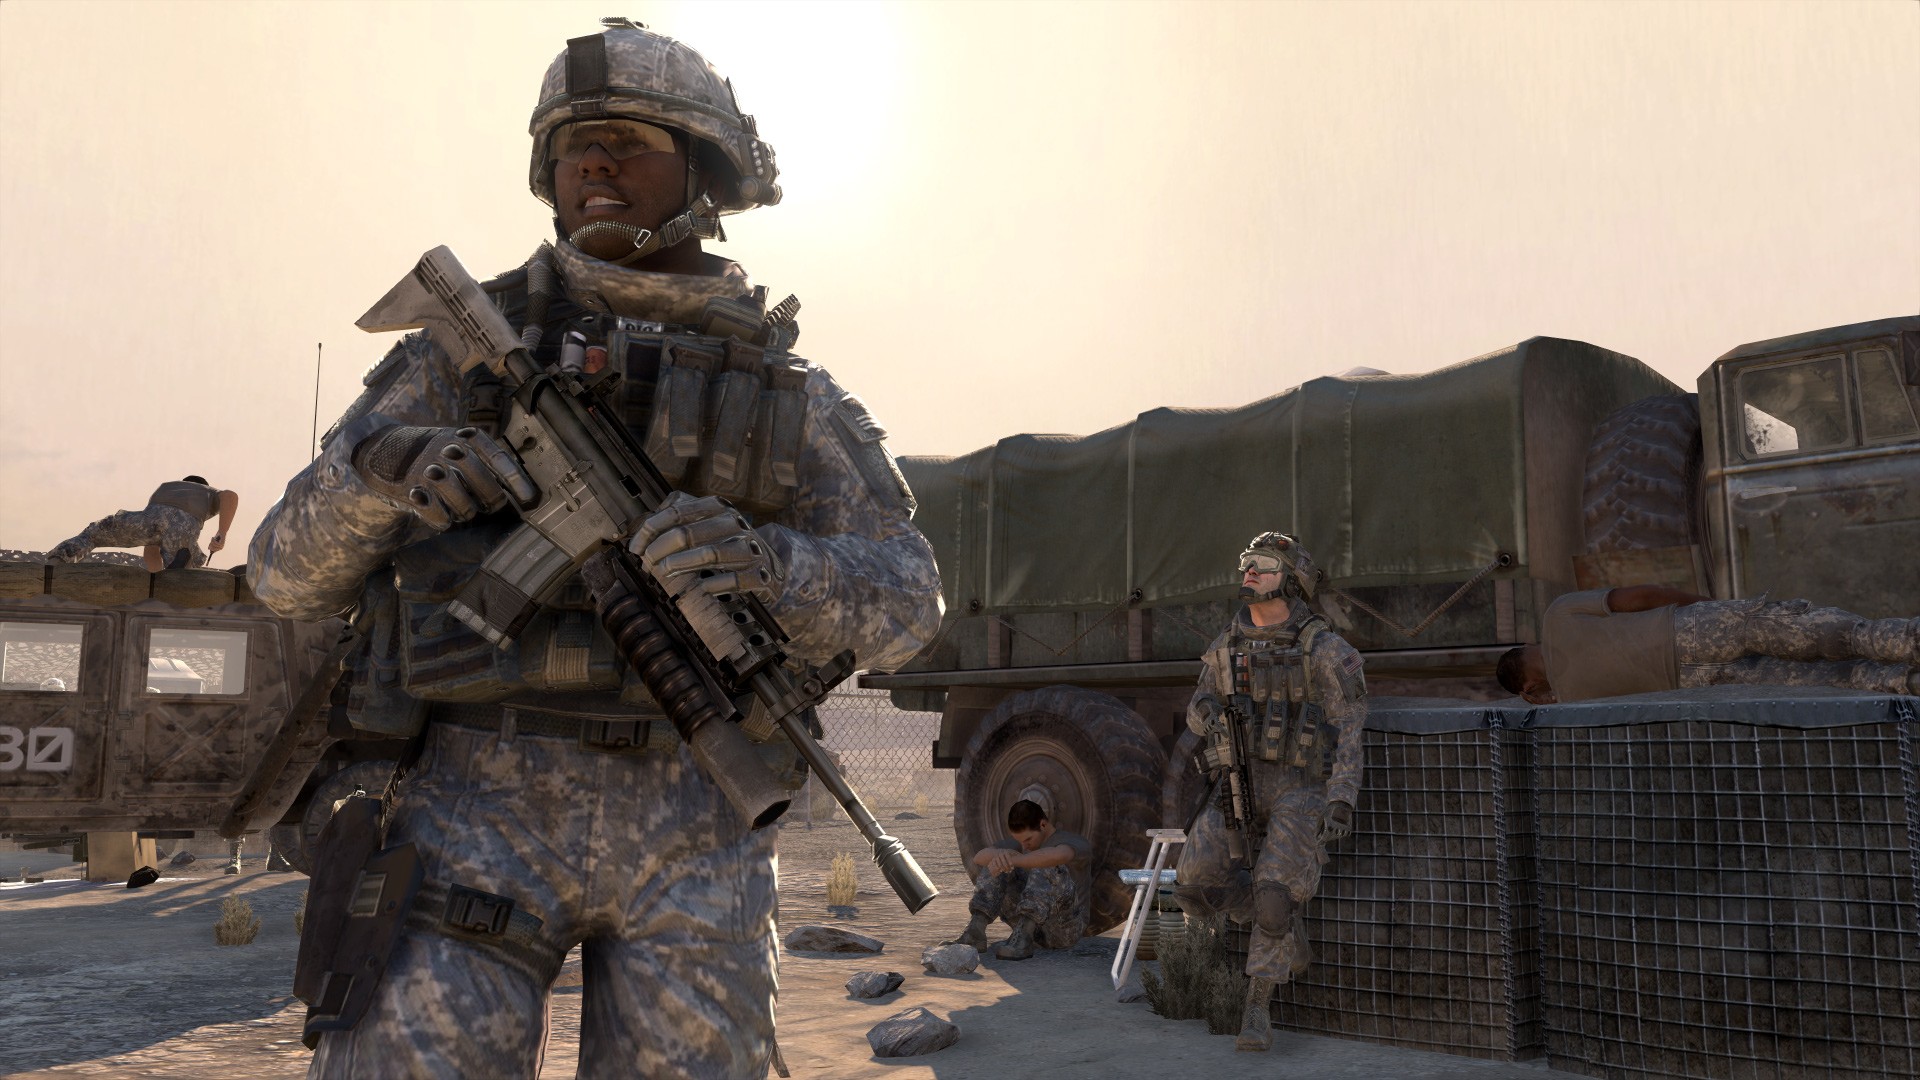 Скачать обои бесплатно Видеоигры, Call Of Duty Modern Warfare 2, Зов Долга картинка на рабочий стол ПК